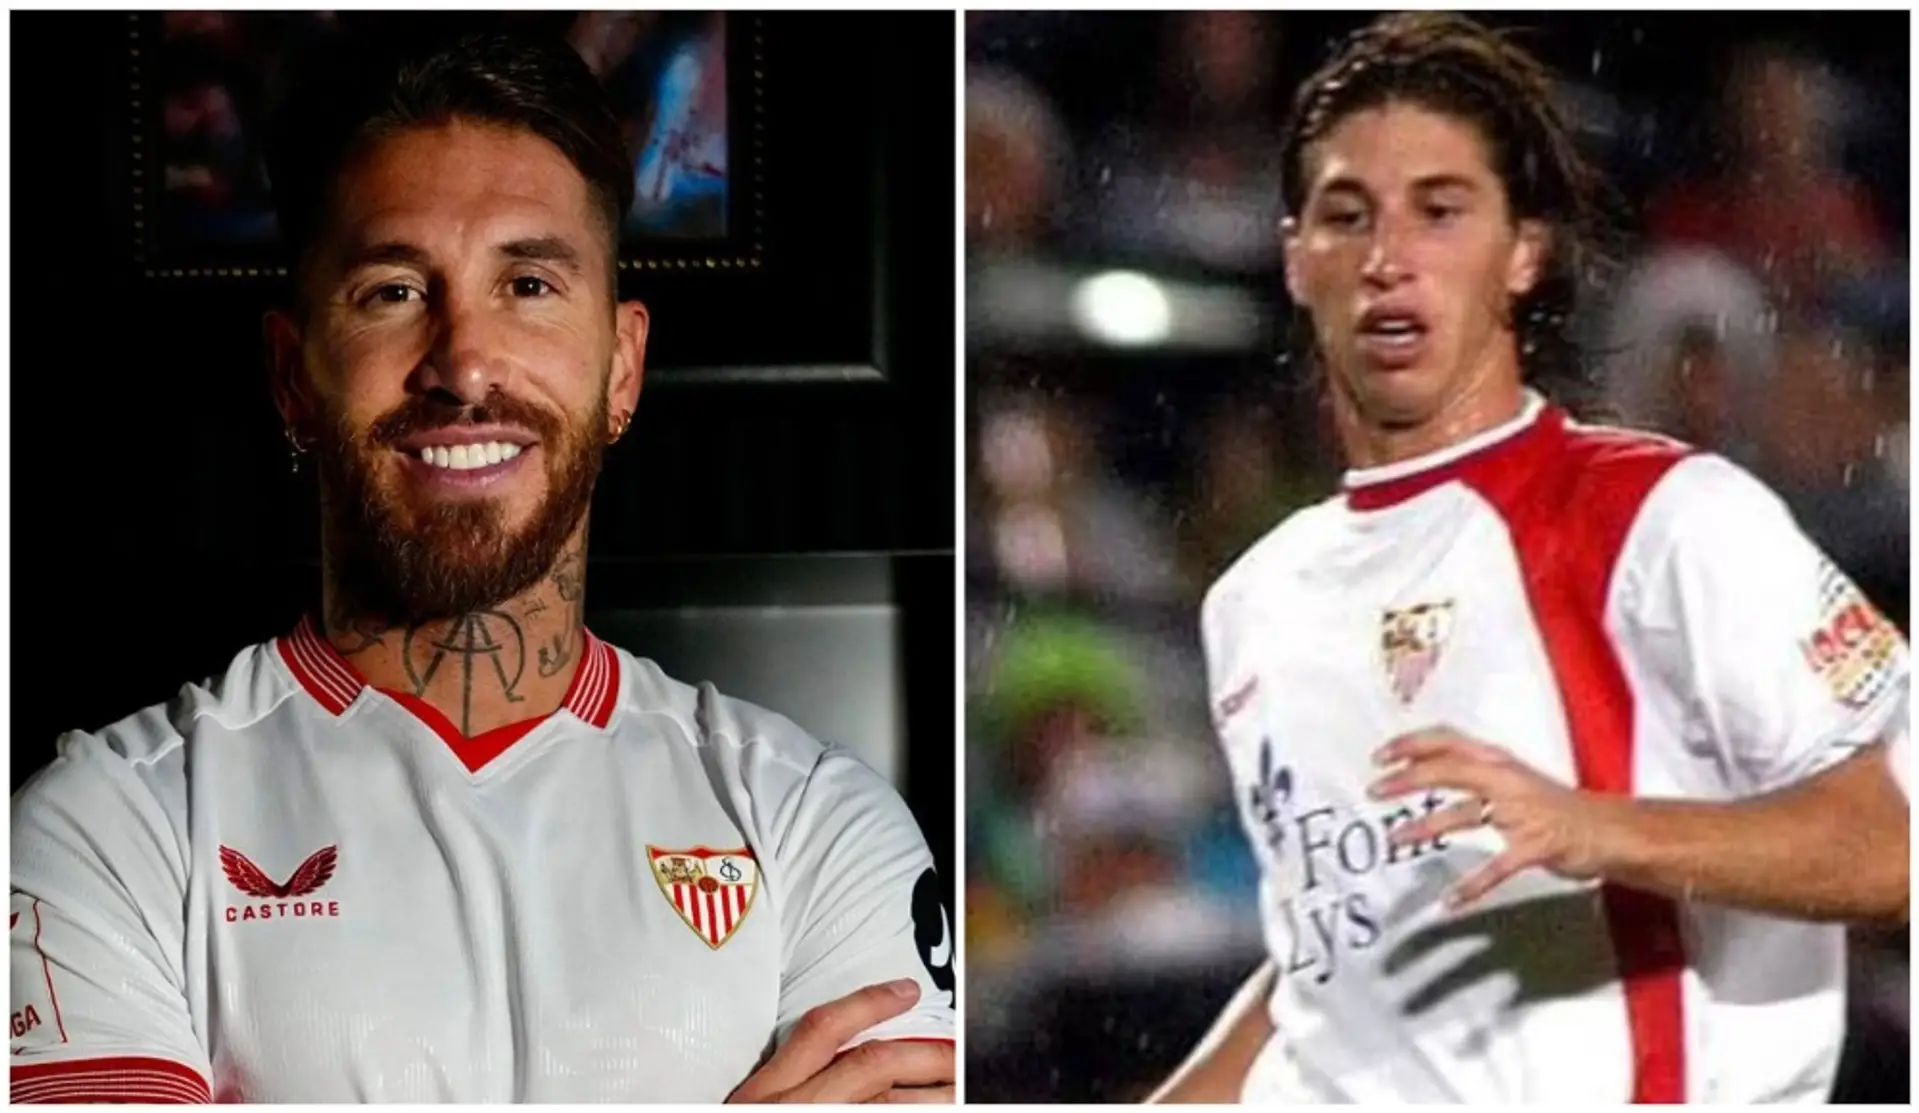 "J'ai toujours été guidé par mes impulsions et mon cœur" : Ramos explique pourquoi il a rejoint le Séville FC et pas la MLS ou l'Arabie Saoudite